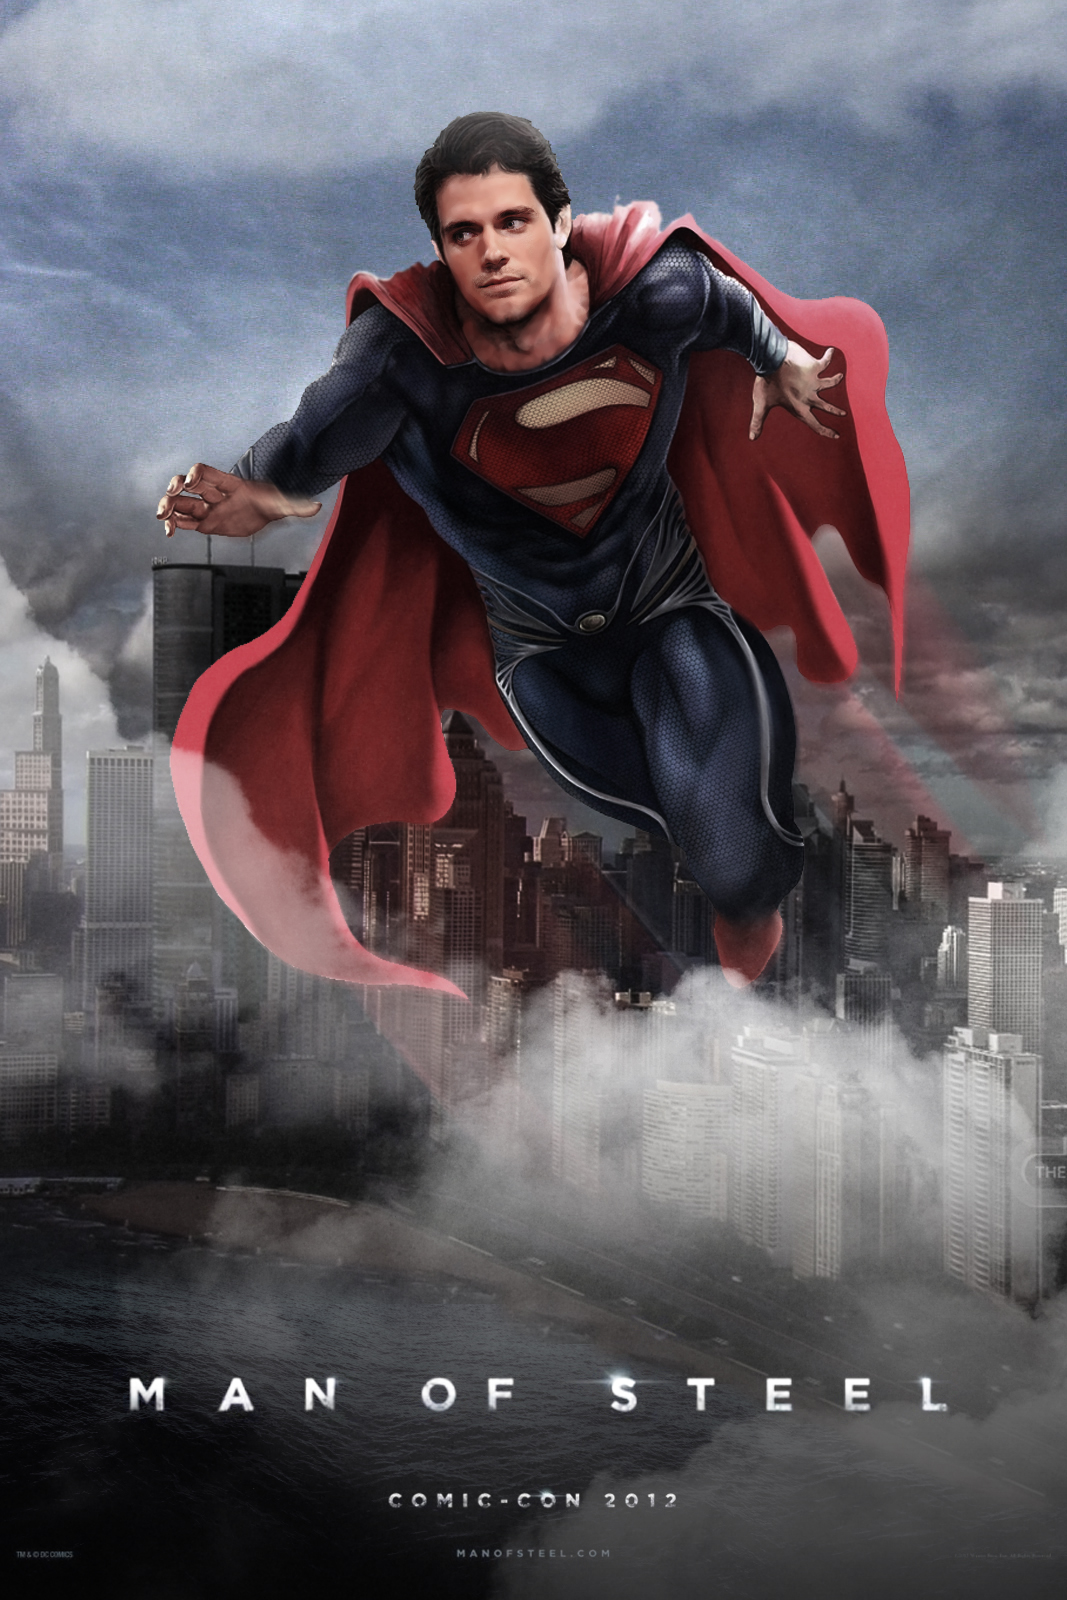 homme de papier peint en acier,superman,super héros,personnage fictif,film,affiche